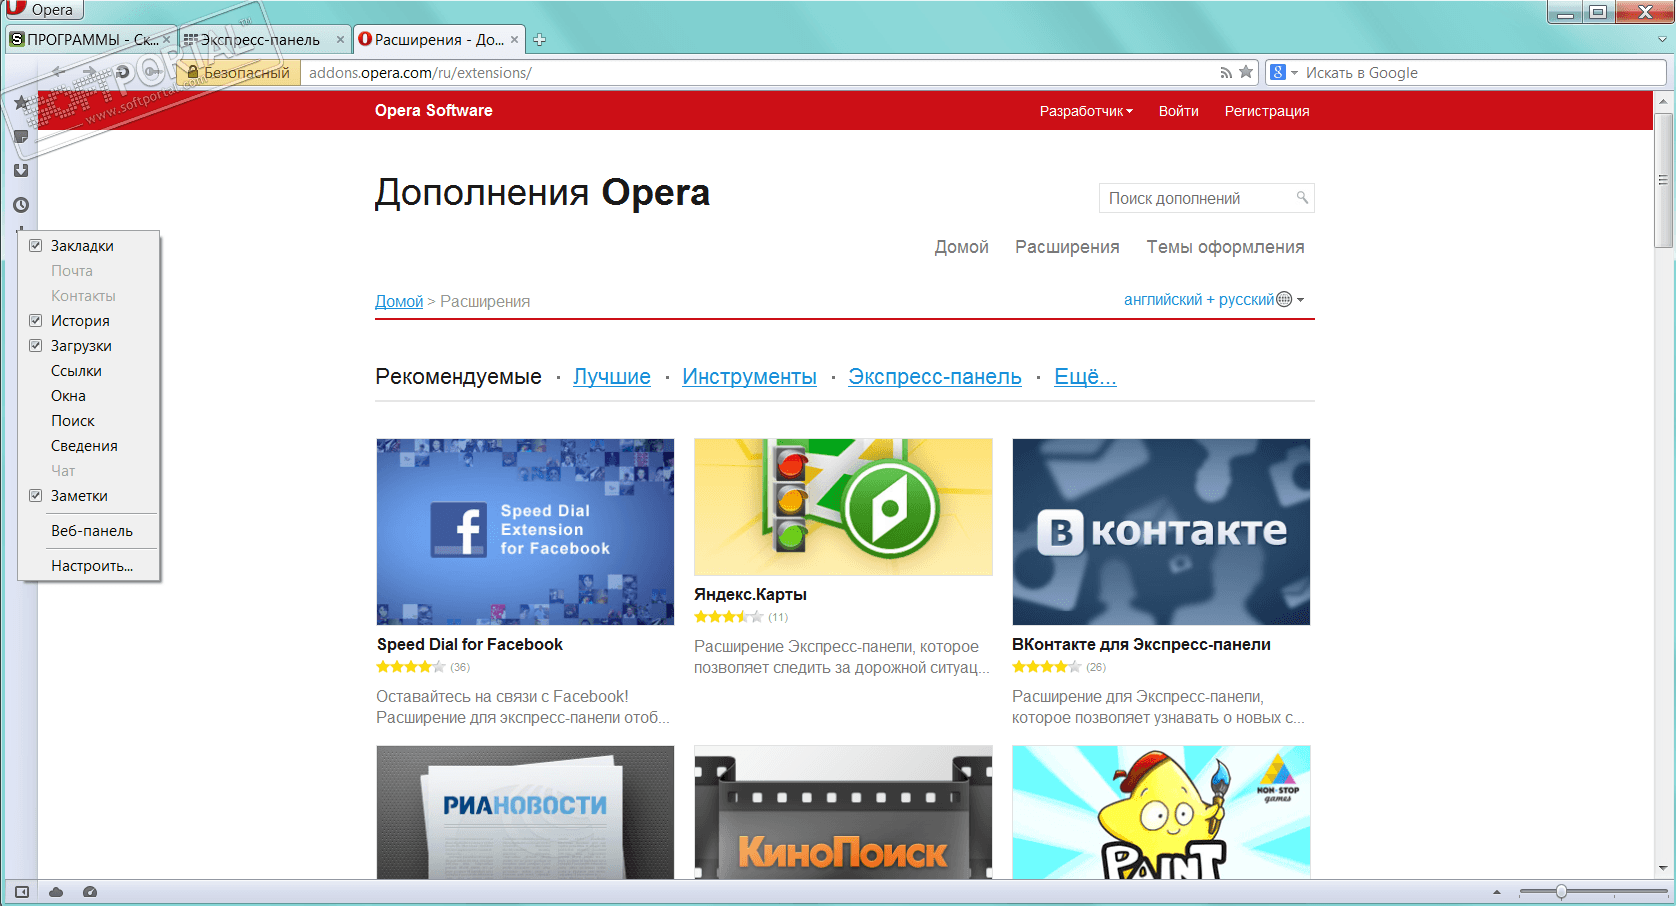 Скачать opera 12 rus бесплатно скачать